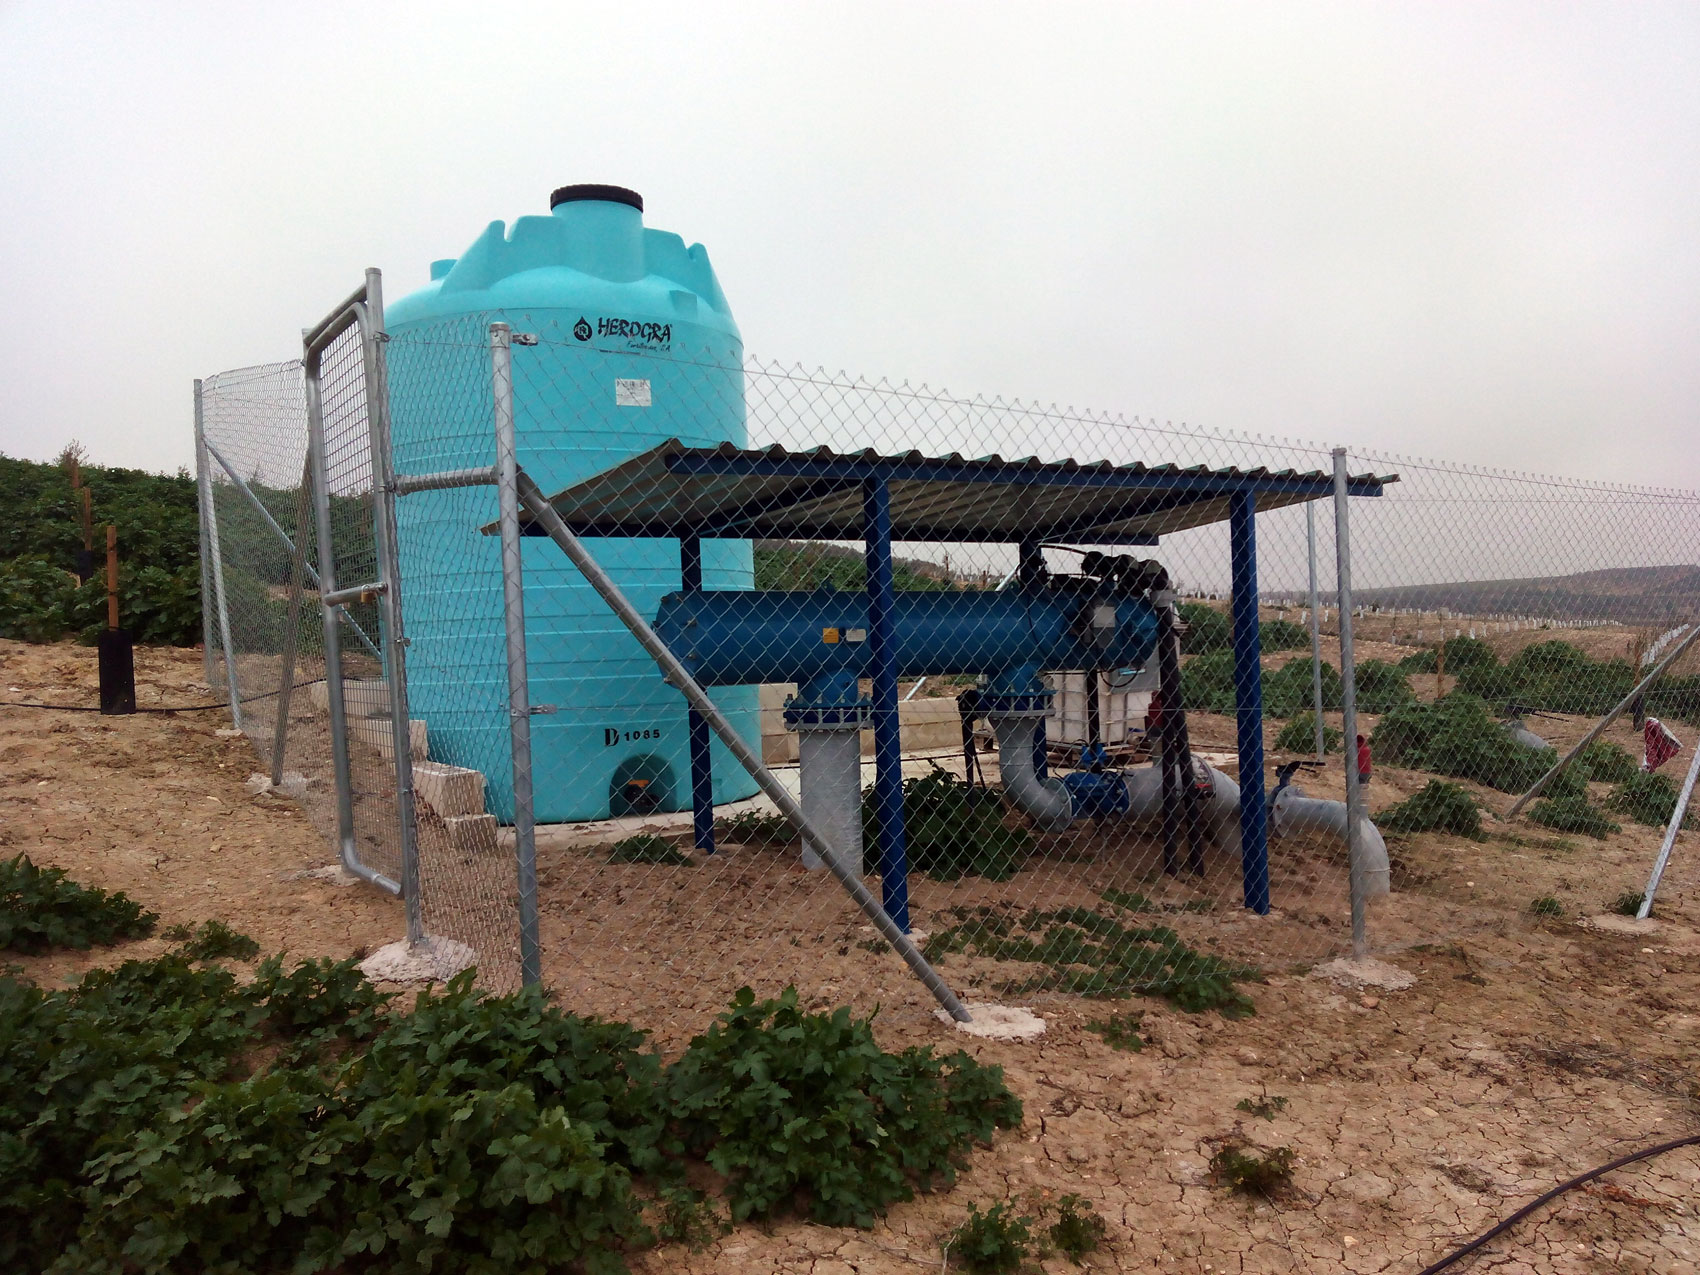 Cabezal de filtrado instalado en parcela de olivar joven equipado con tanques de almacenamiento de soluciones lquidas y bomba inyectora hidrulica...